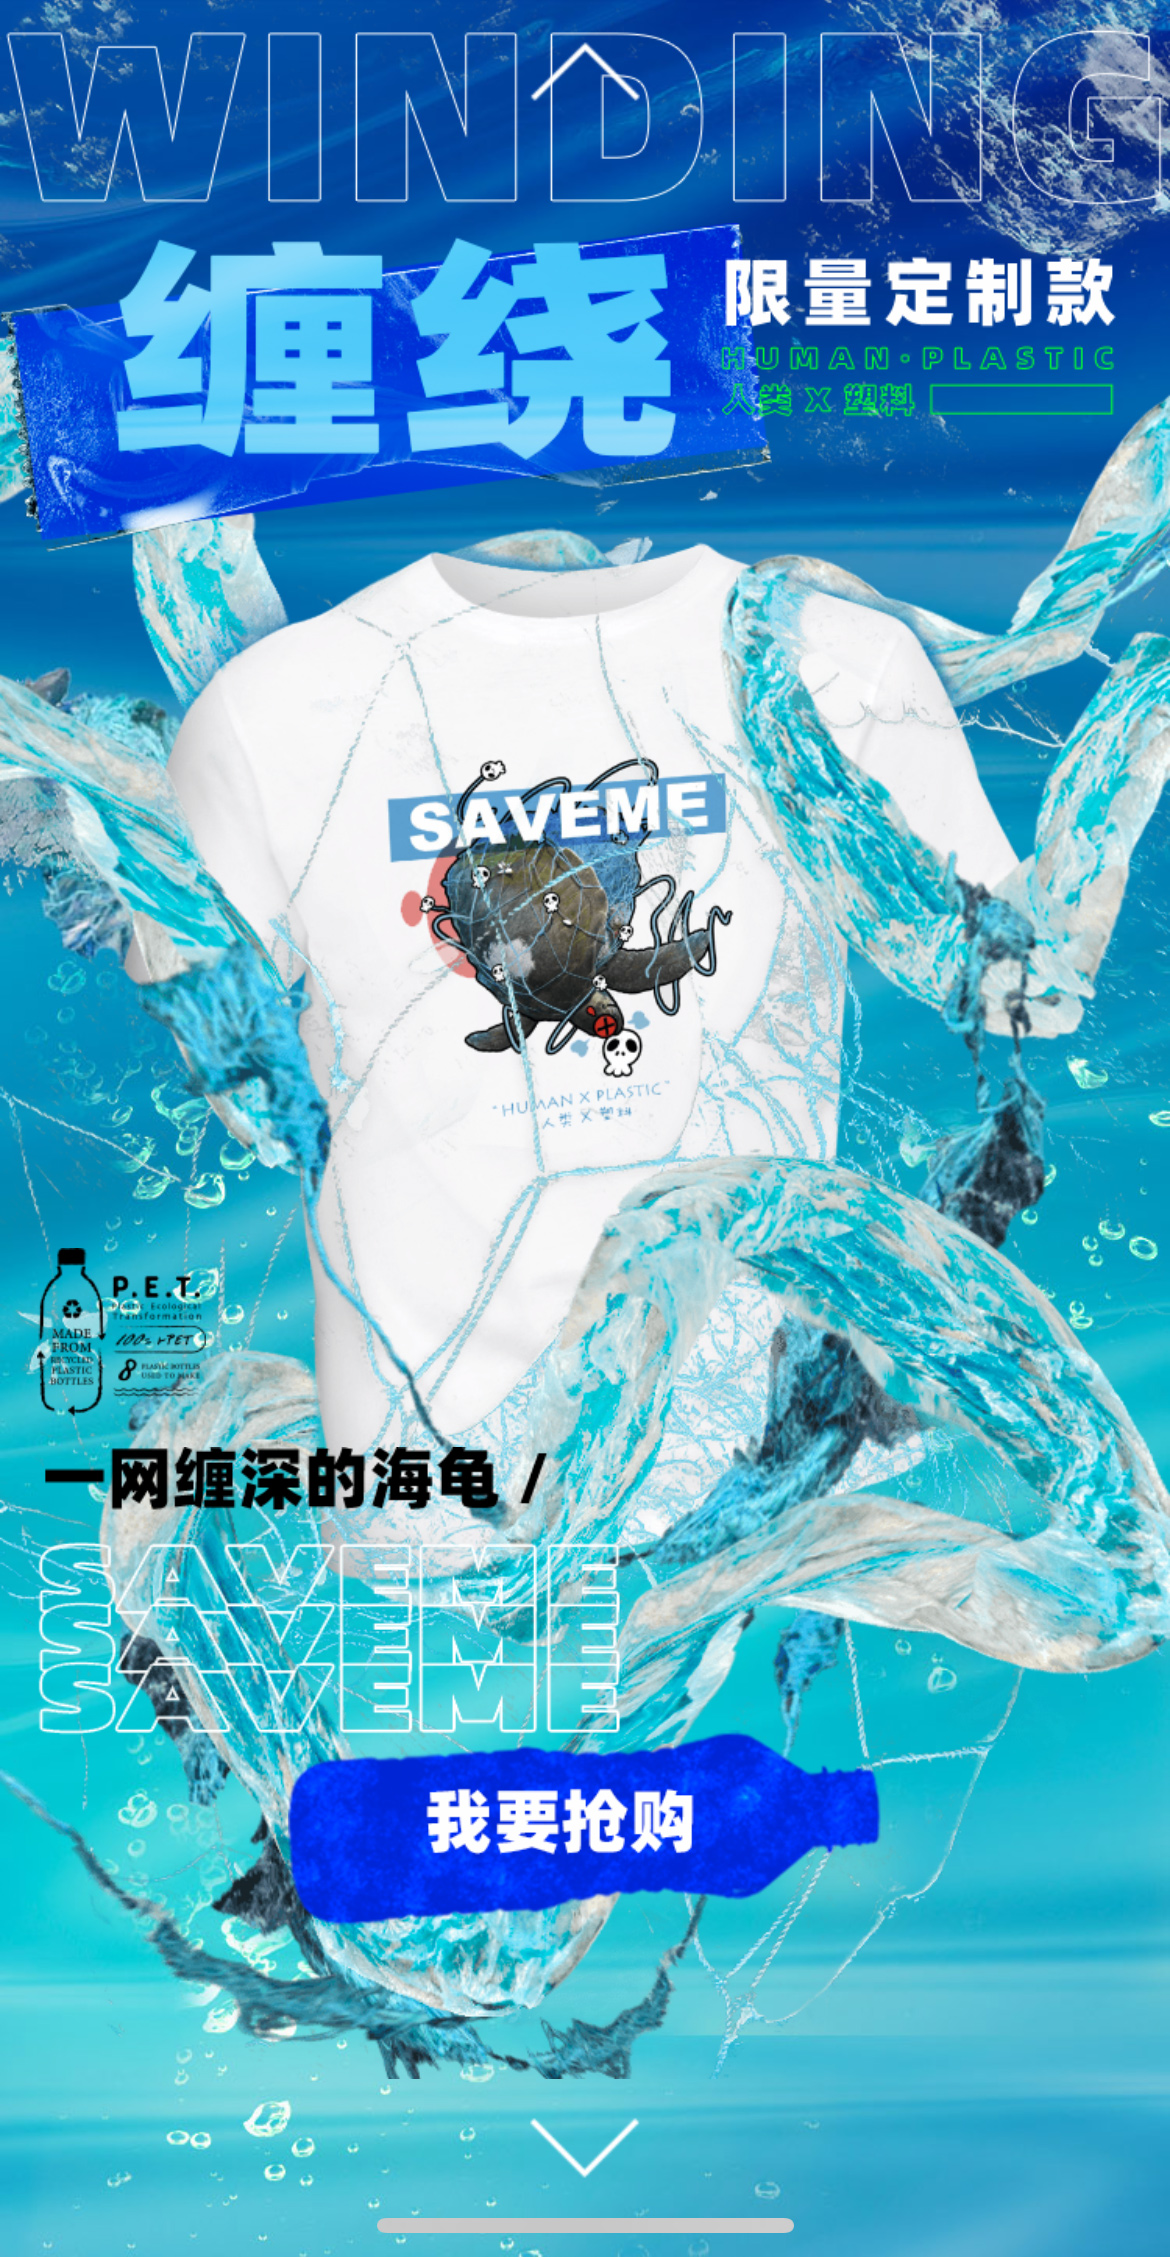 「给海洋的限量版」T恤，将垃圾变成时尚潮物